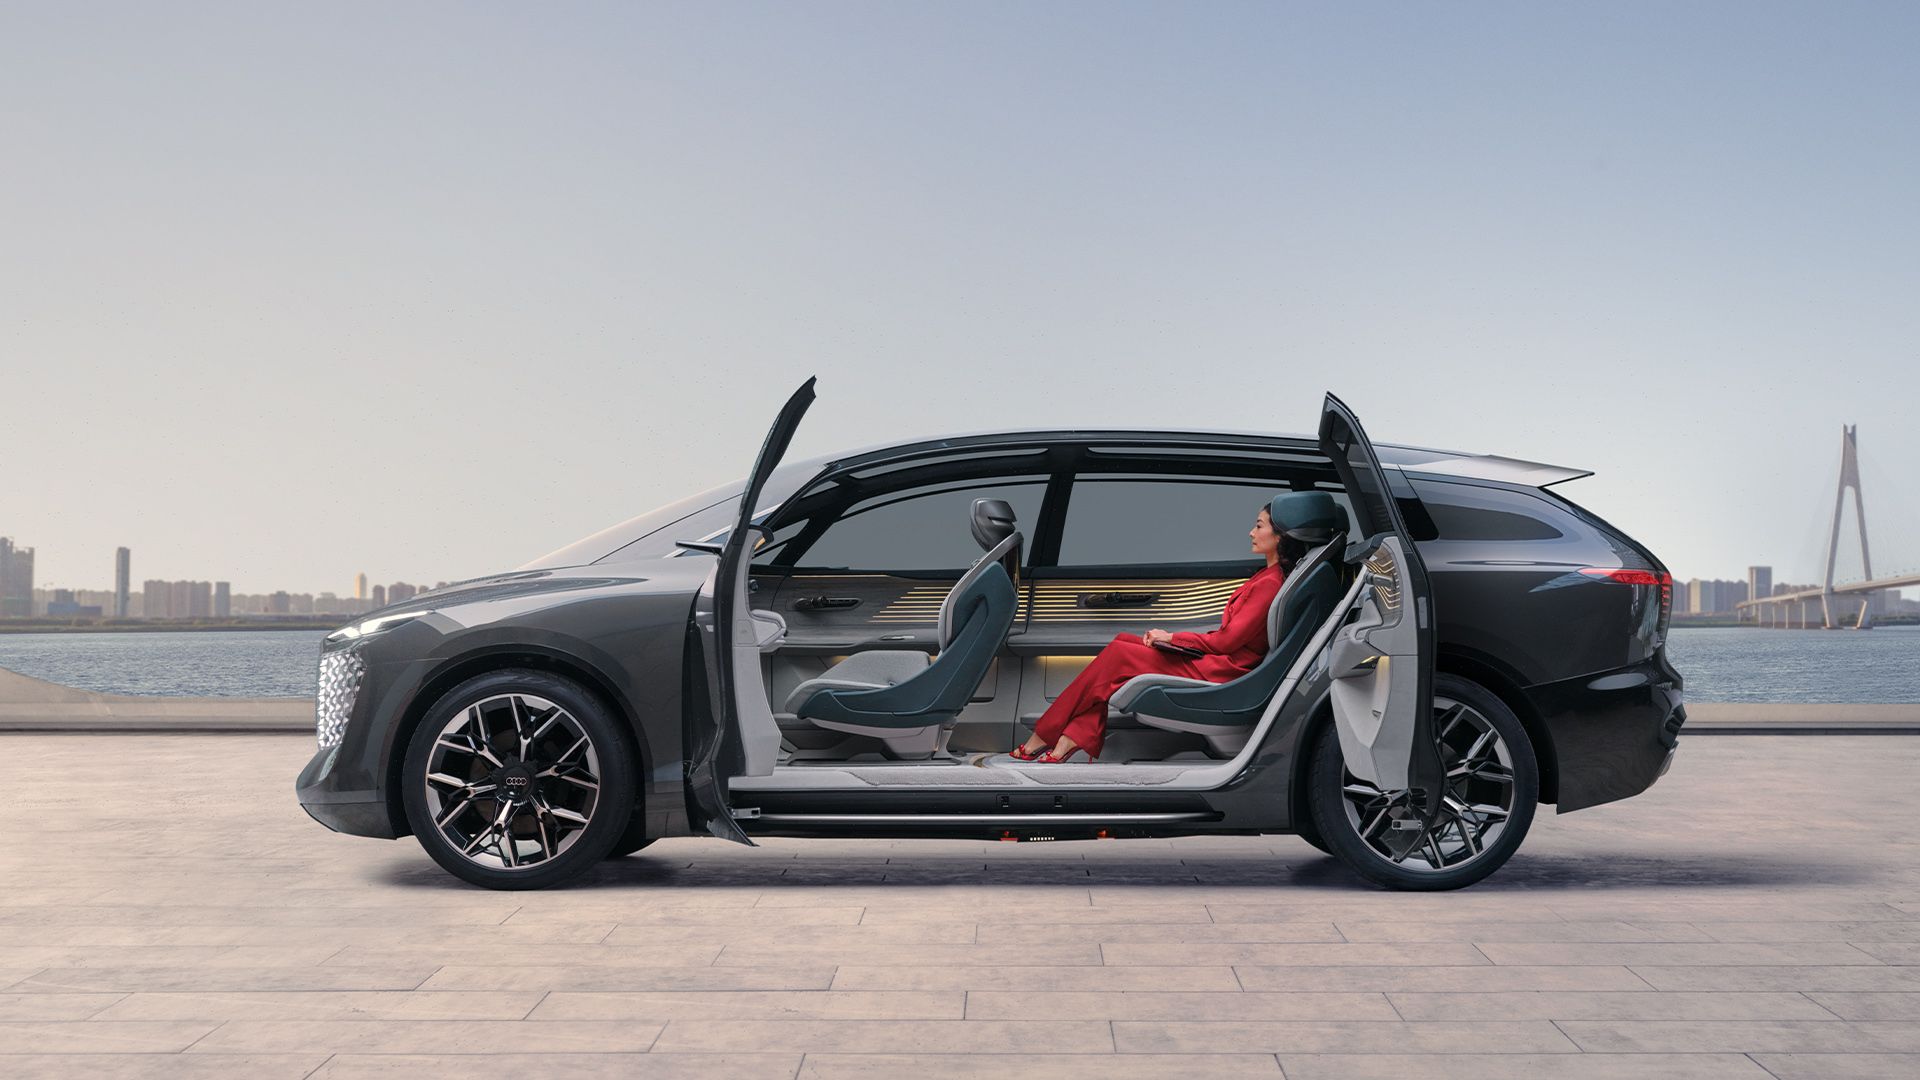 Geöffnete Türen geben den Blick auf den Innenraum des Audi urbansphere con-cept frei.